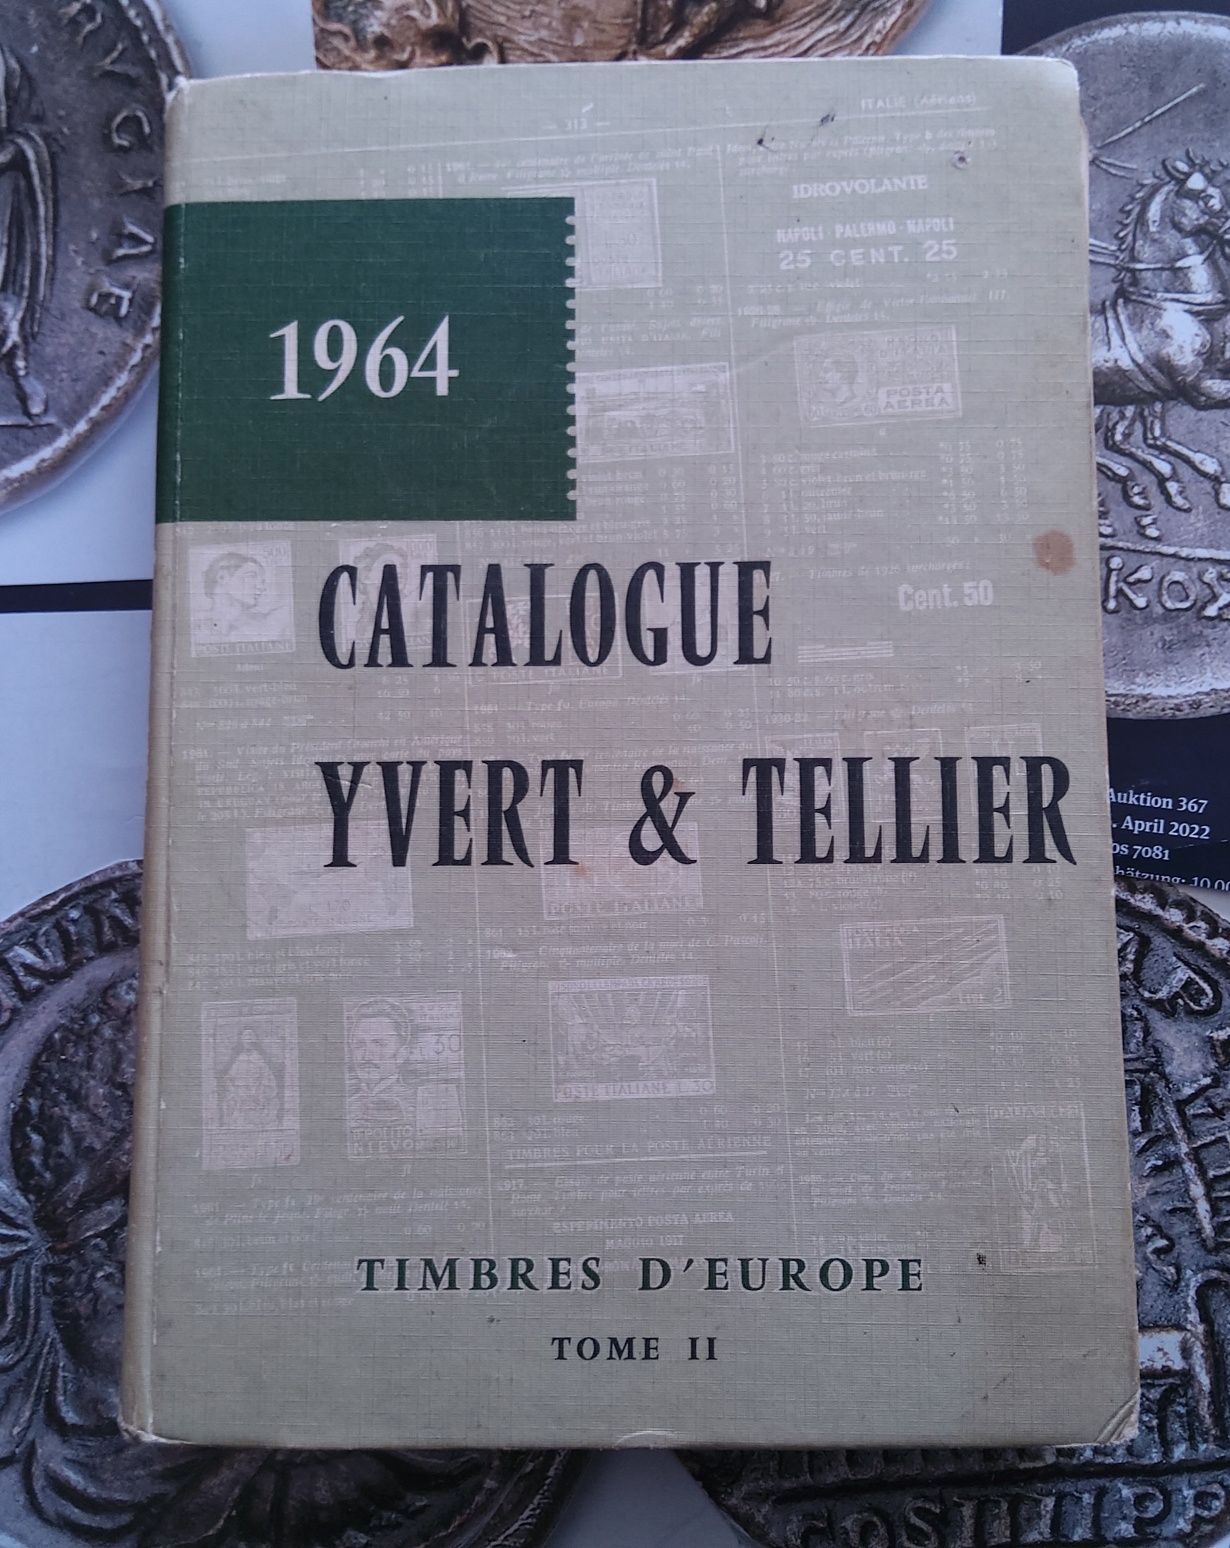 16524#Catálogo selos da Europa antigo em Francês até o ano 1964